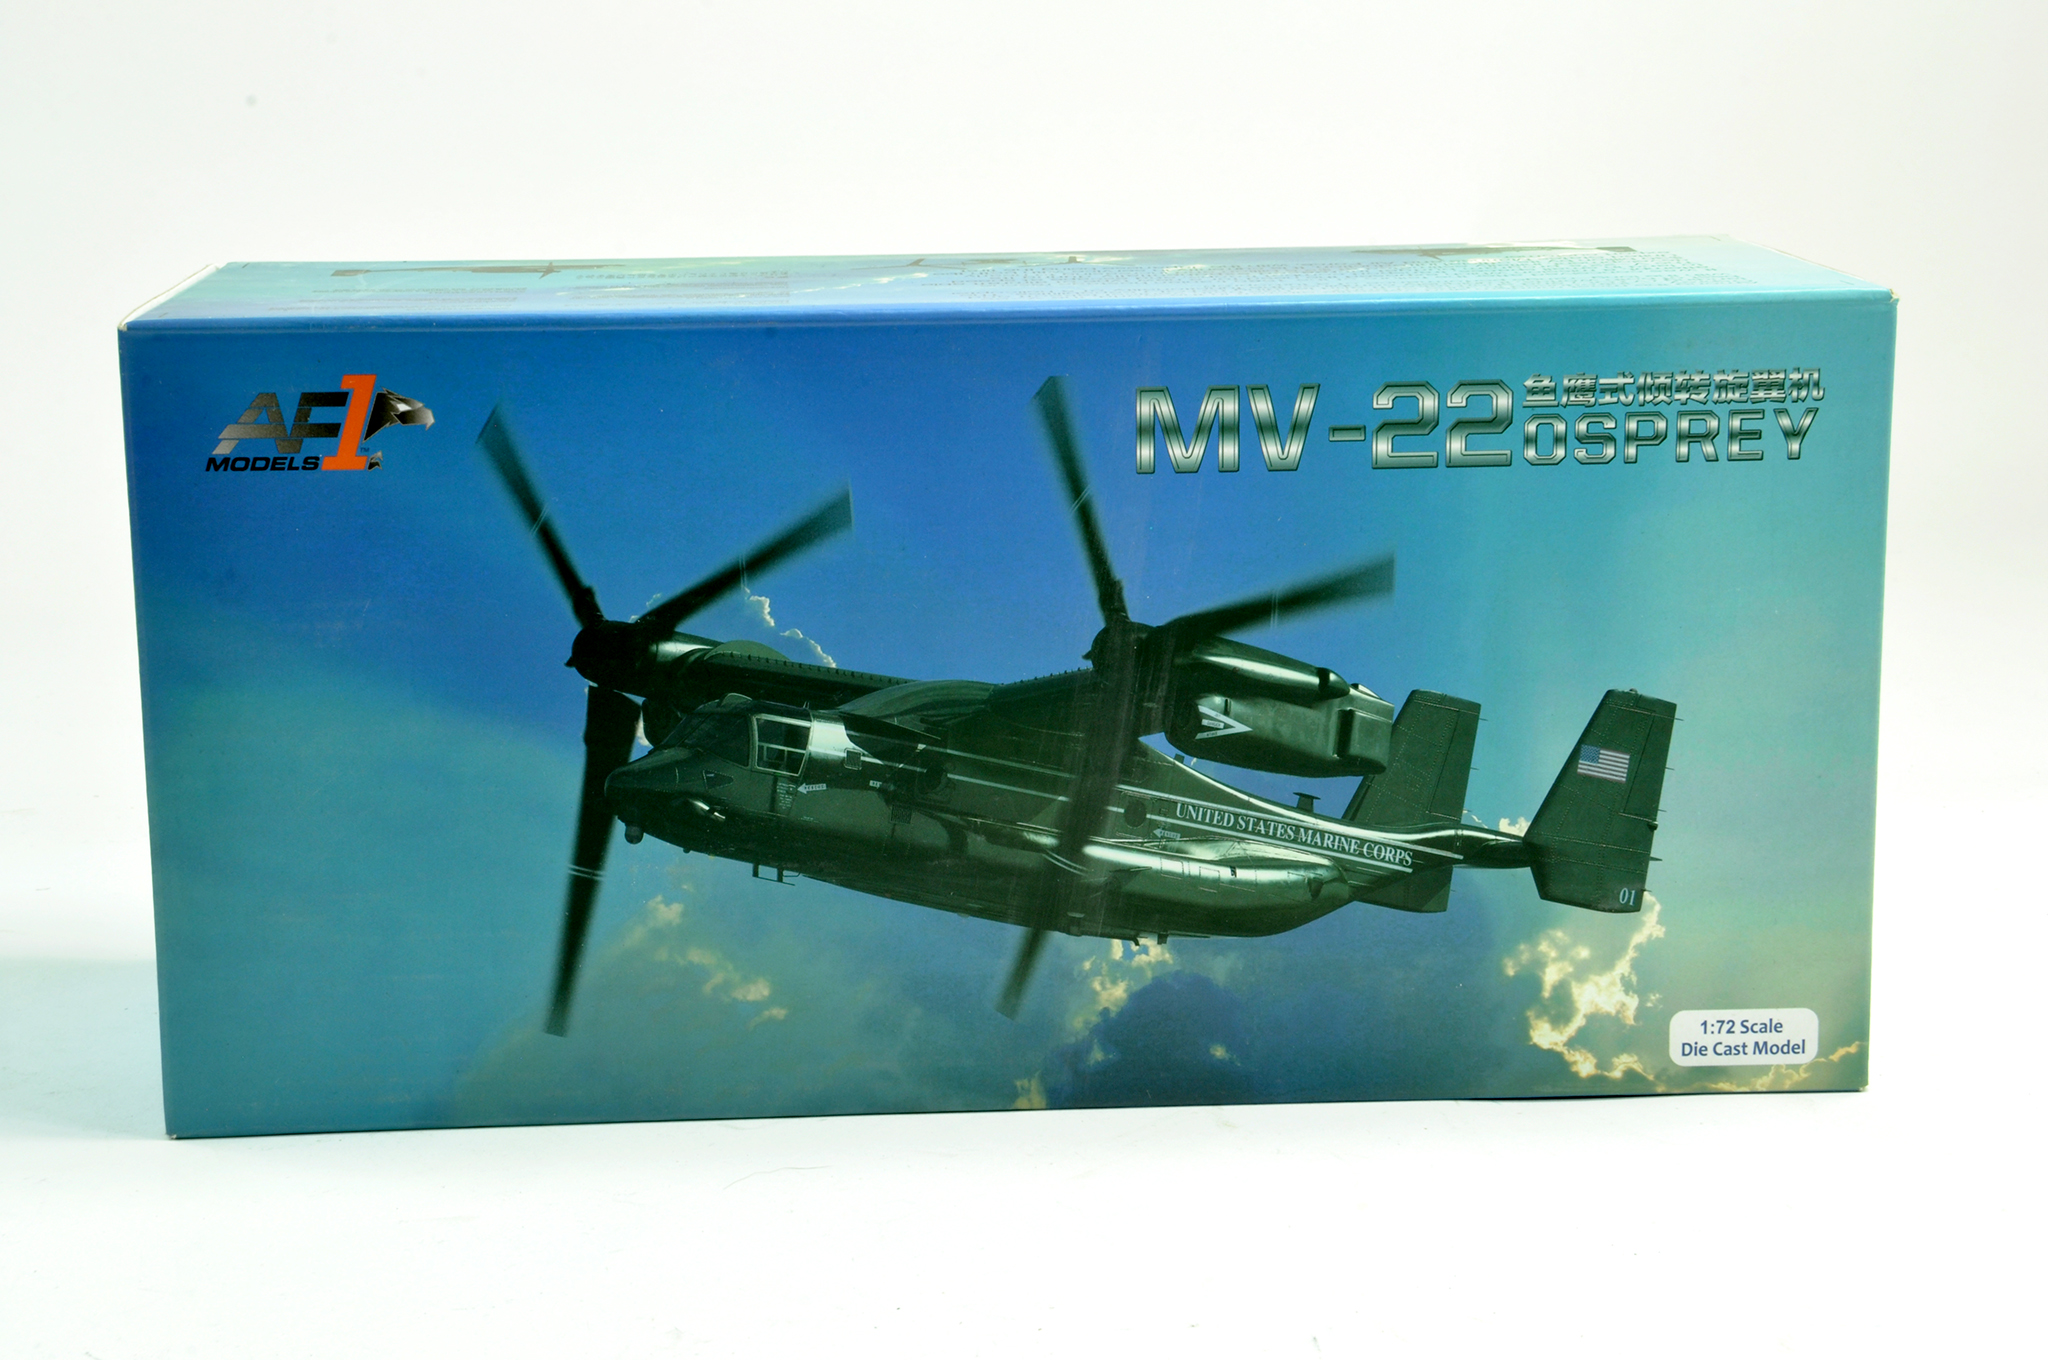 AF1 Models 1/72 MV 22 Osprey Helicopter. Appears generally excellent. Vendor lists as complete.